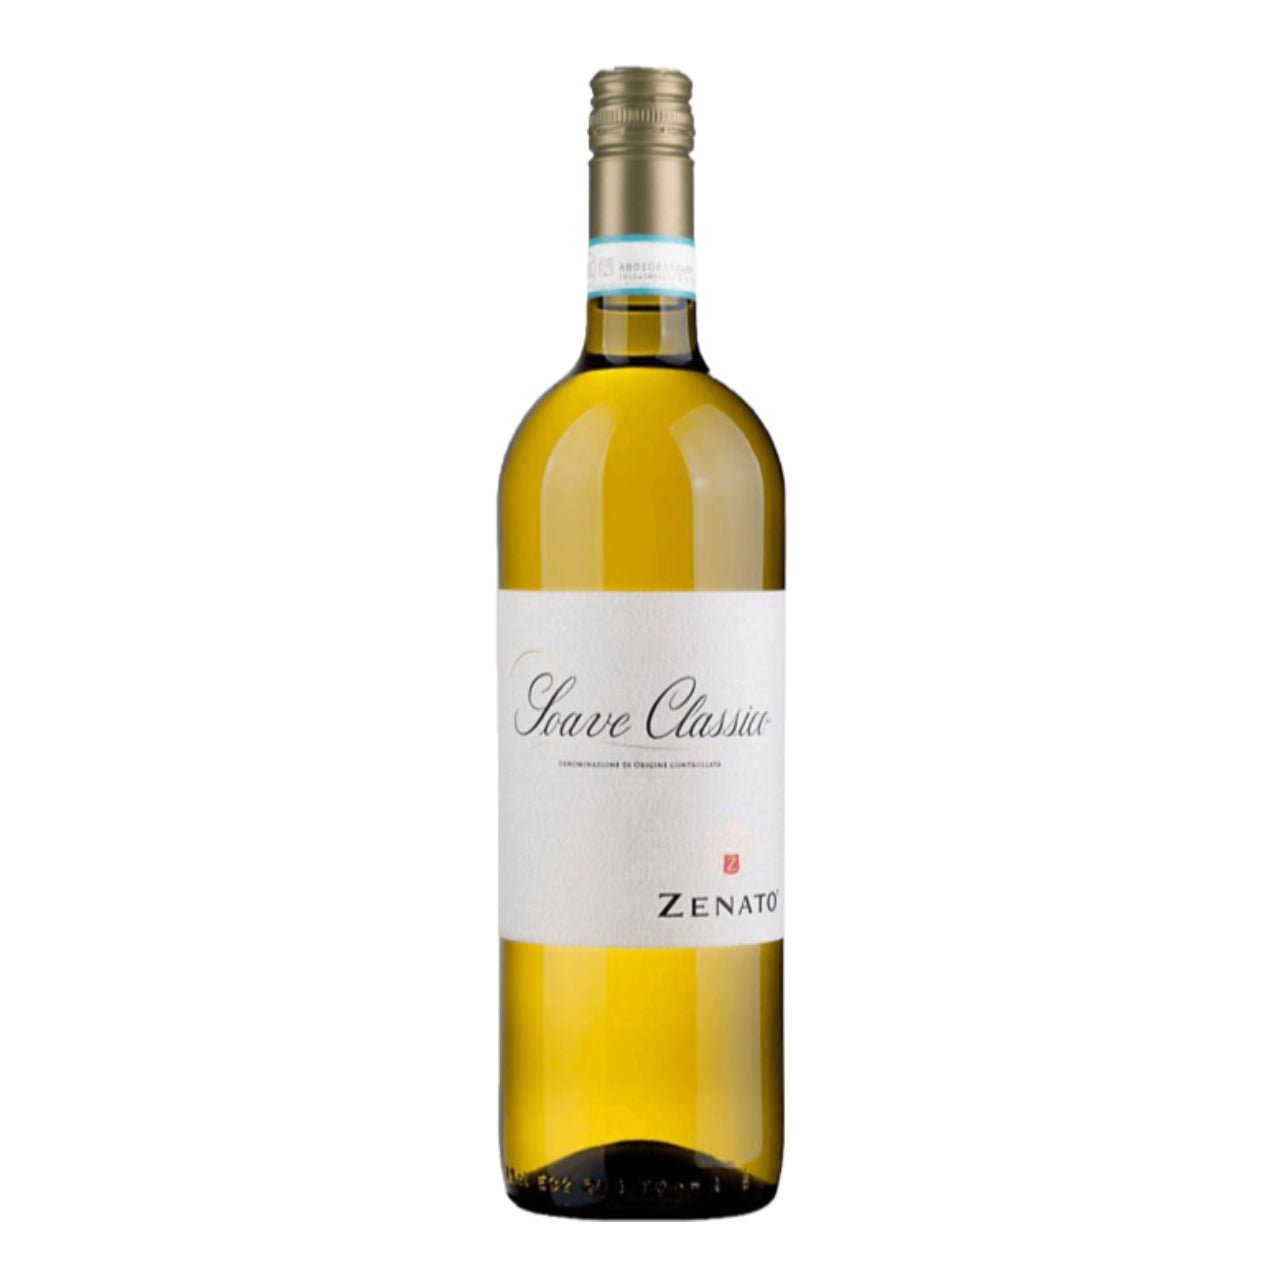 Zenato Soave Classico 2022 - Wine Italy White - Liquor Wine Cave